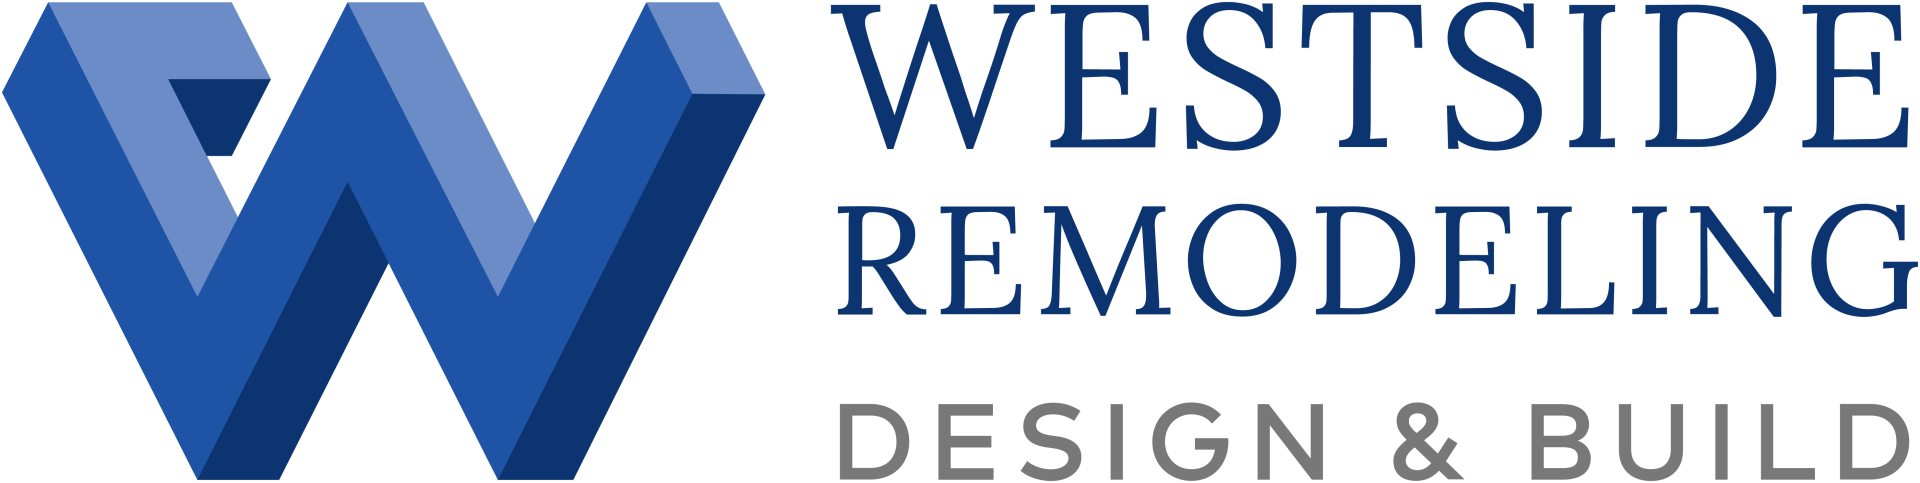 Westside Remodeling